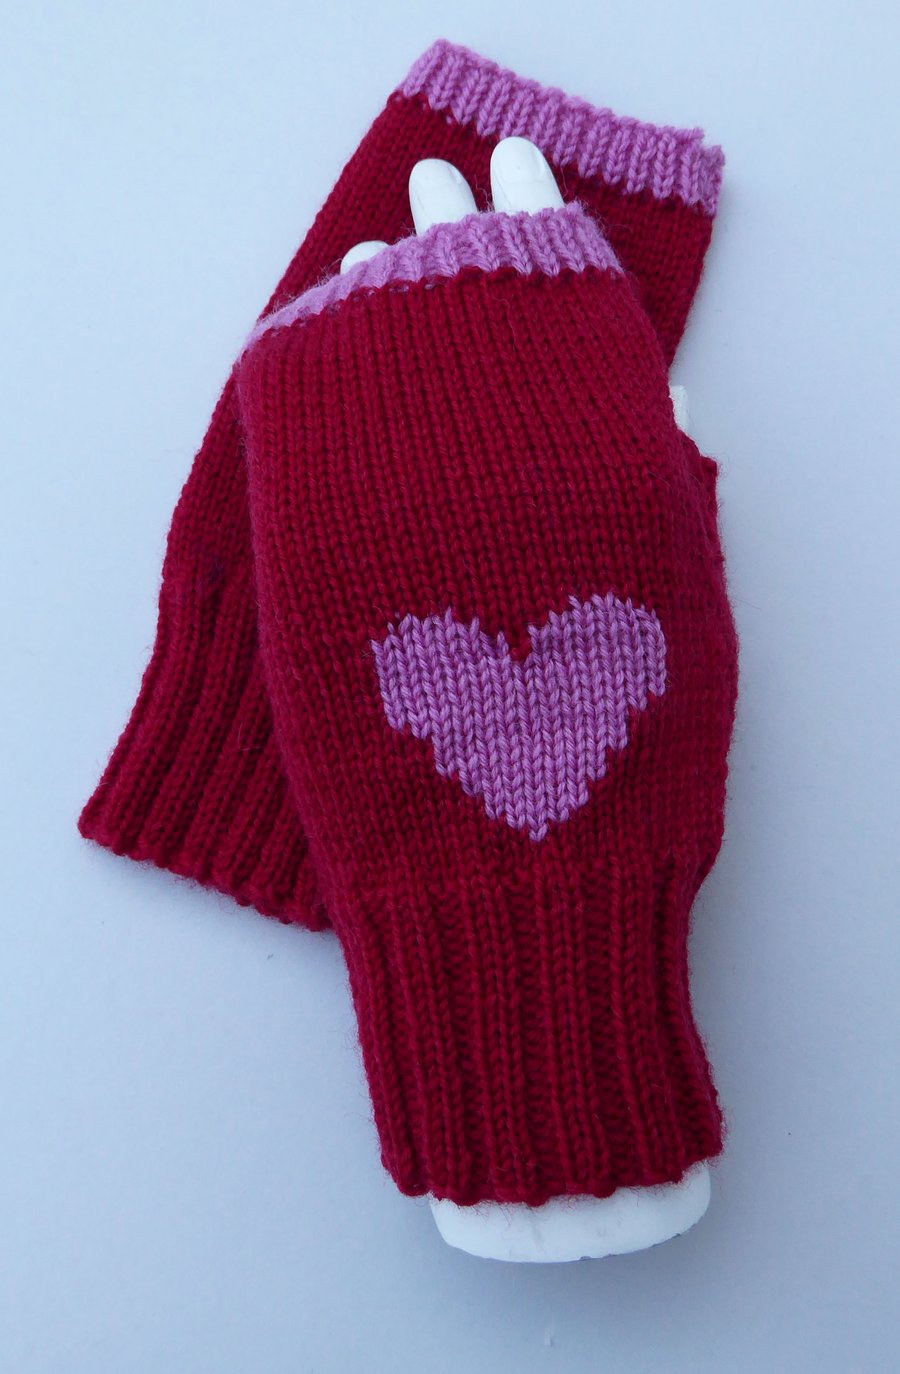 Red Heart Knitted Wool Fingerless Gloves